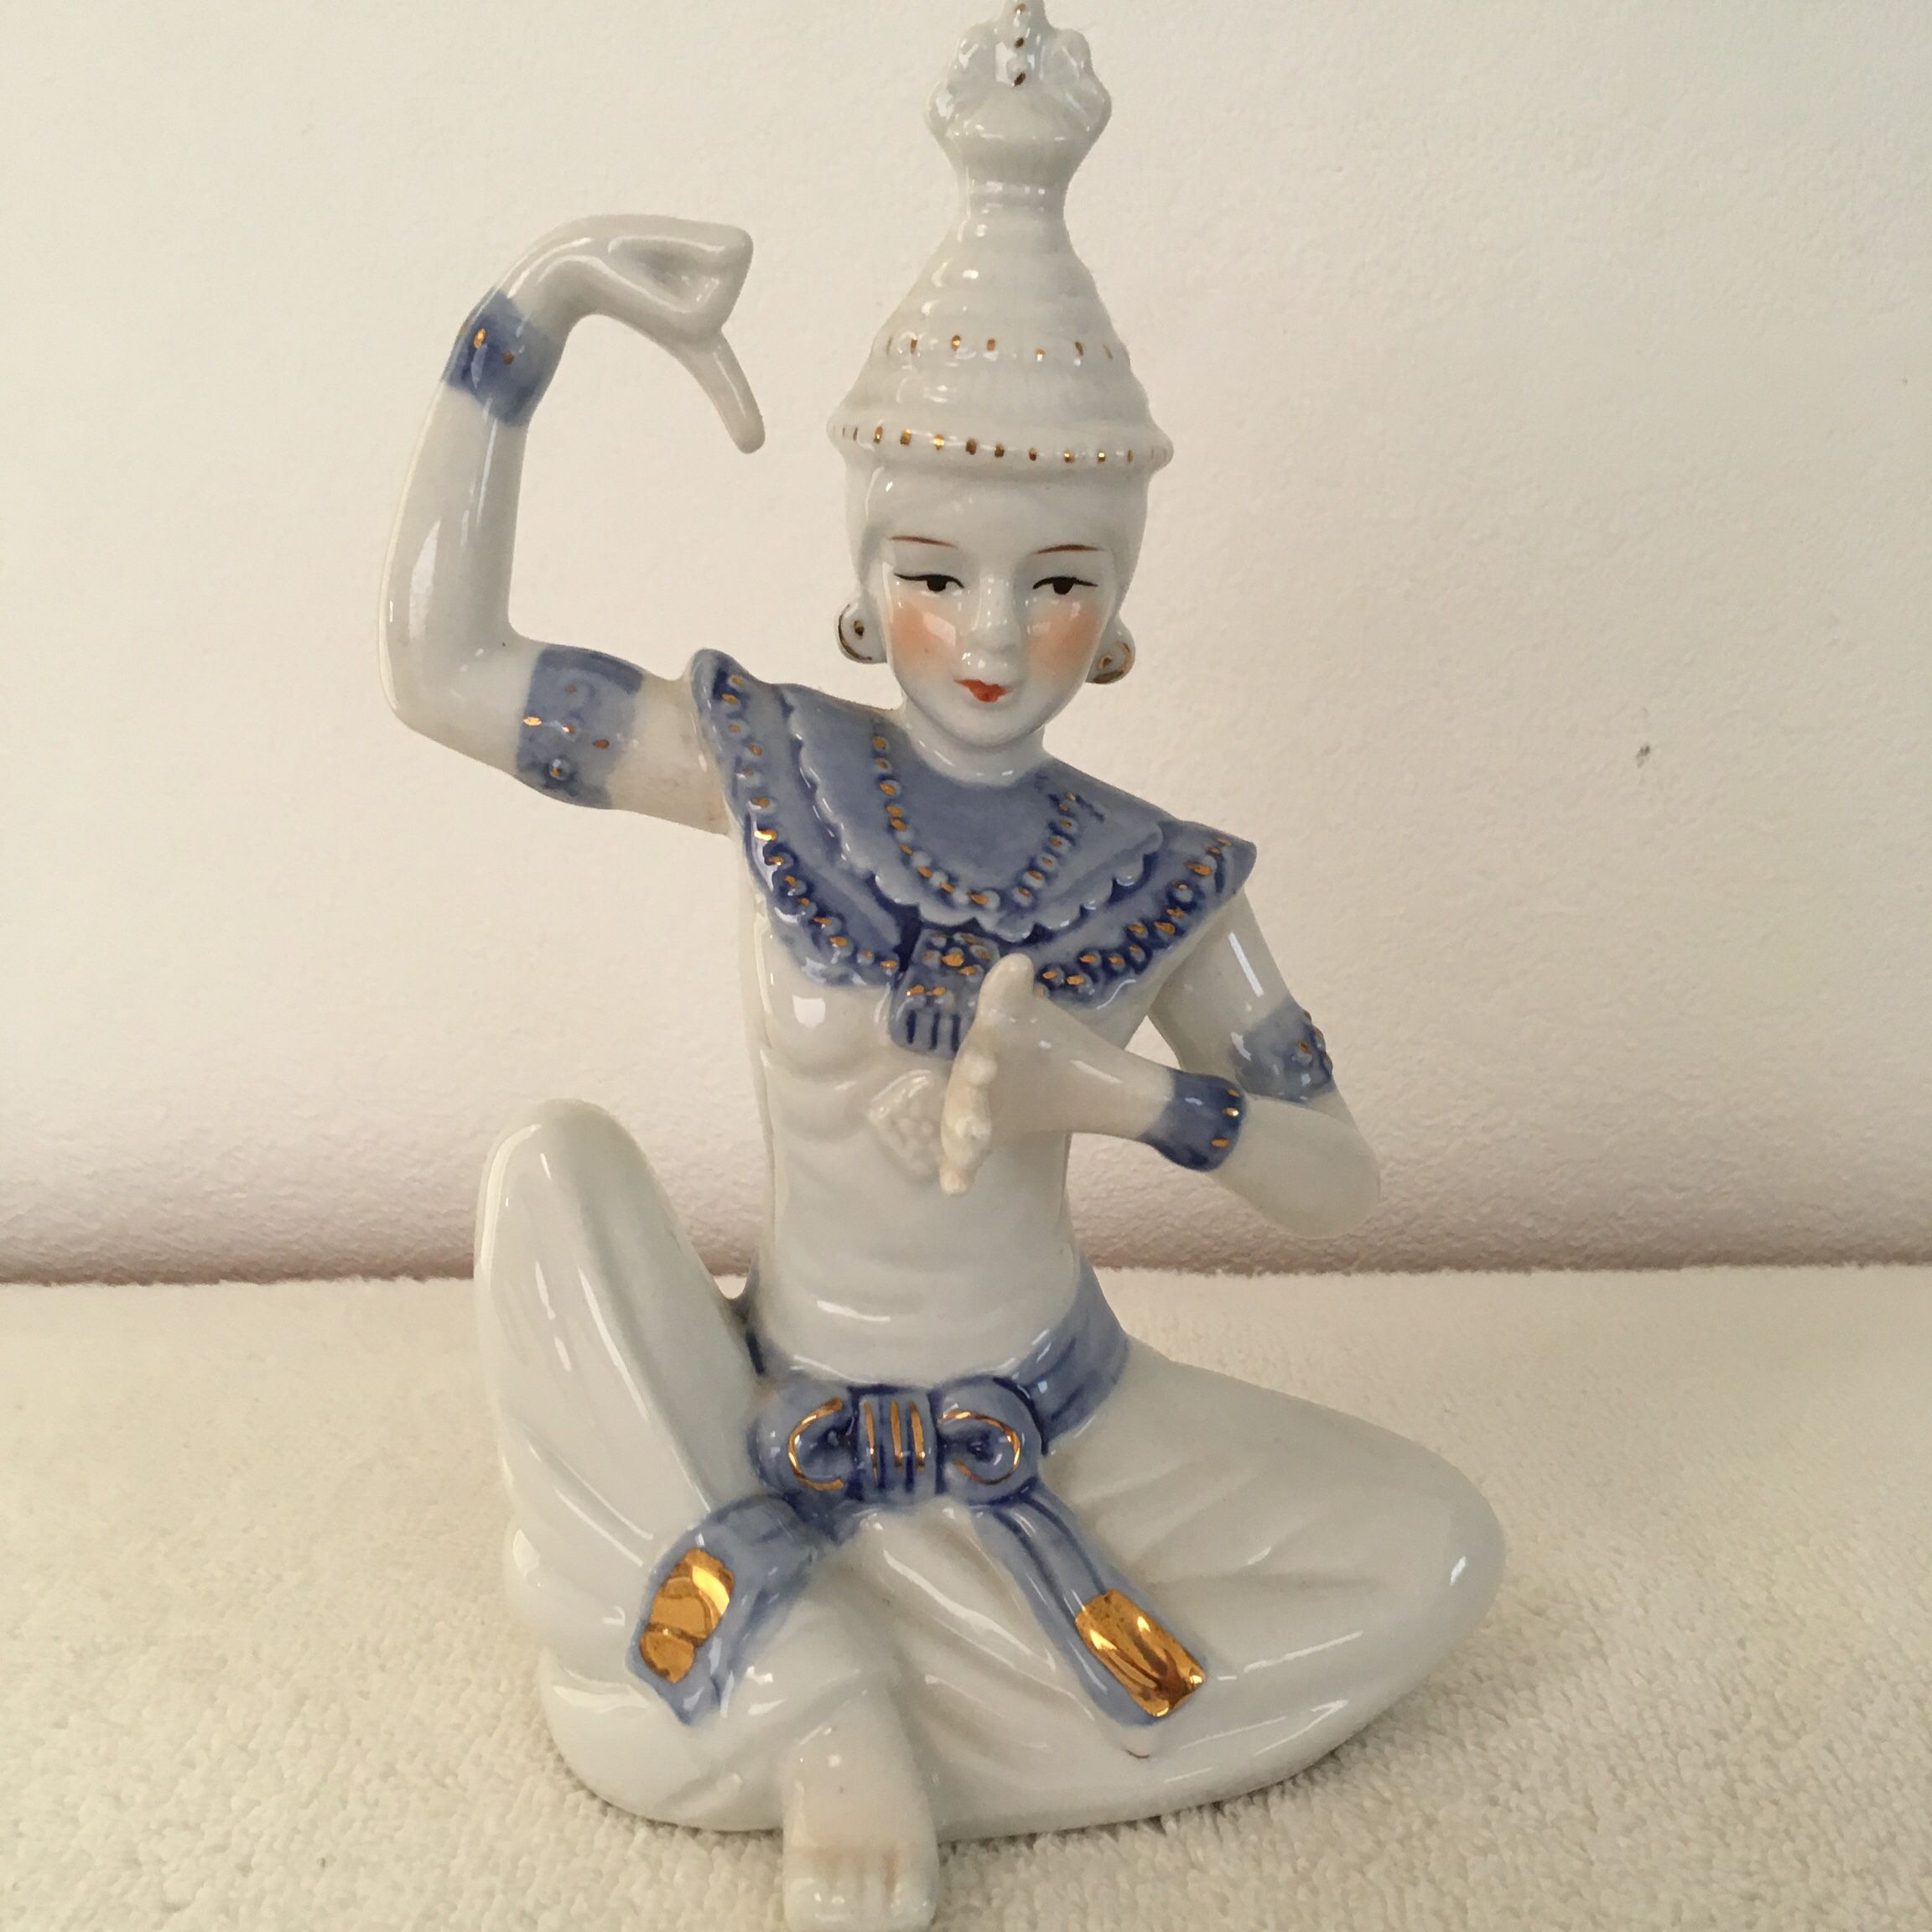 Antique Vintage Thai Buddha Female Ceramic/Porcelain Statue Figurine. Ht: 8”